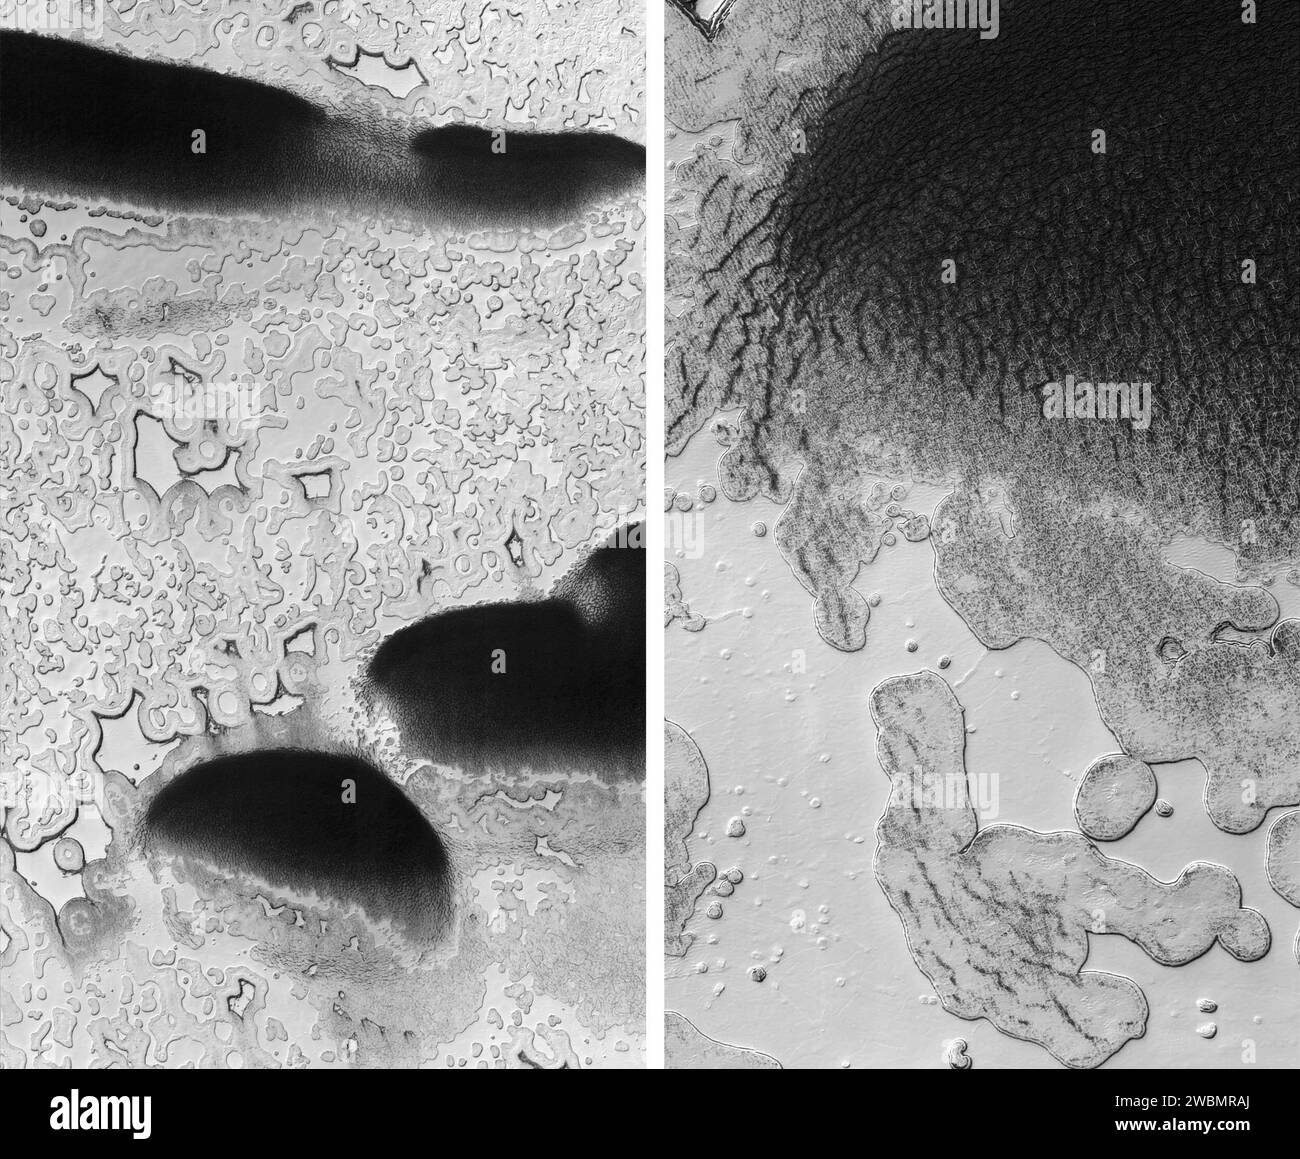 Mars reconnaissance Orbiter de la NASA a pris ces images d'une zone près du pôle sud de Mars où les fosses coalescentes ou allongées sont interprétées comme des signes d'un dépôt sous-jacent de dioxyde de carbone gelé, ou « glace sèche ». Banque D'Images